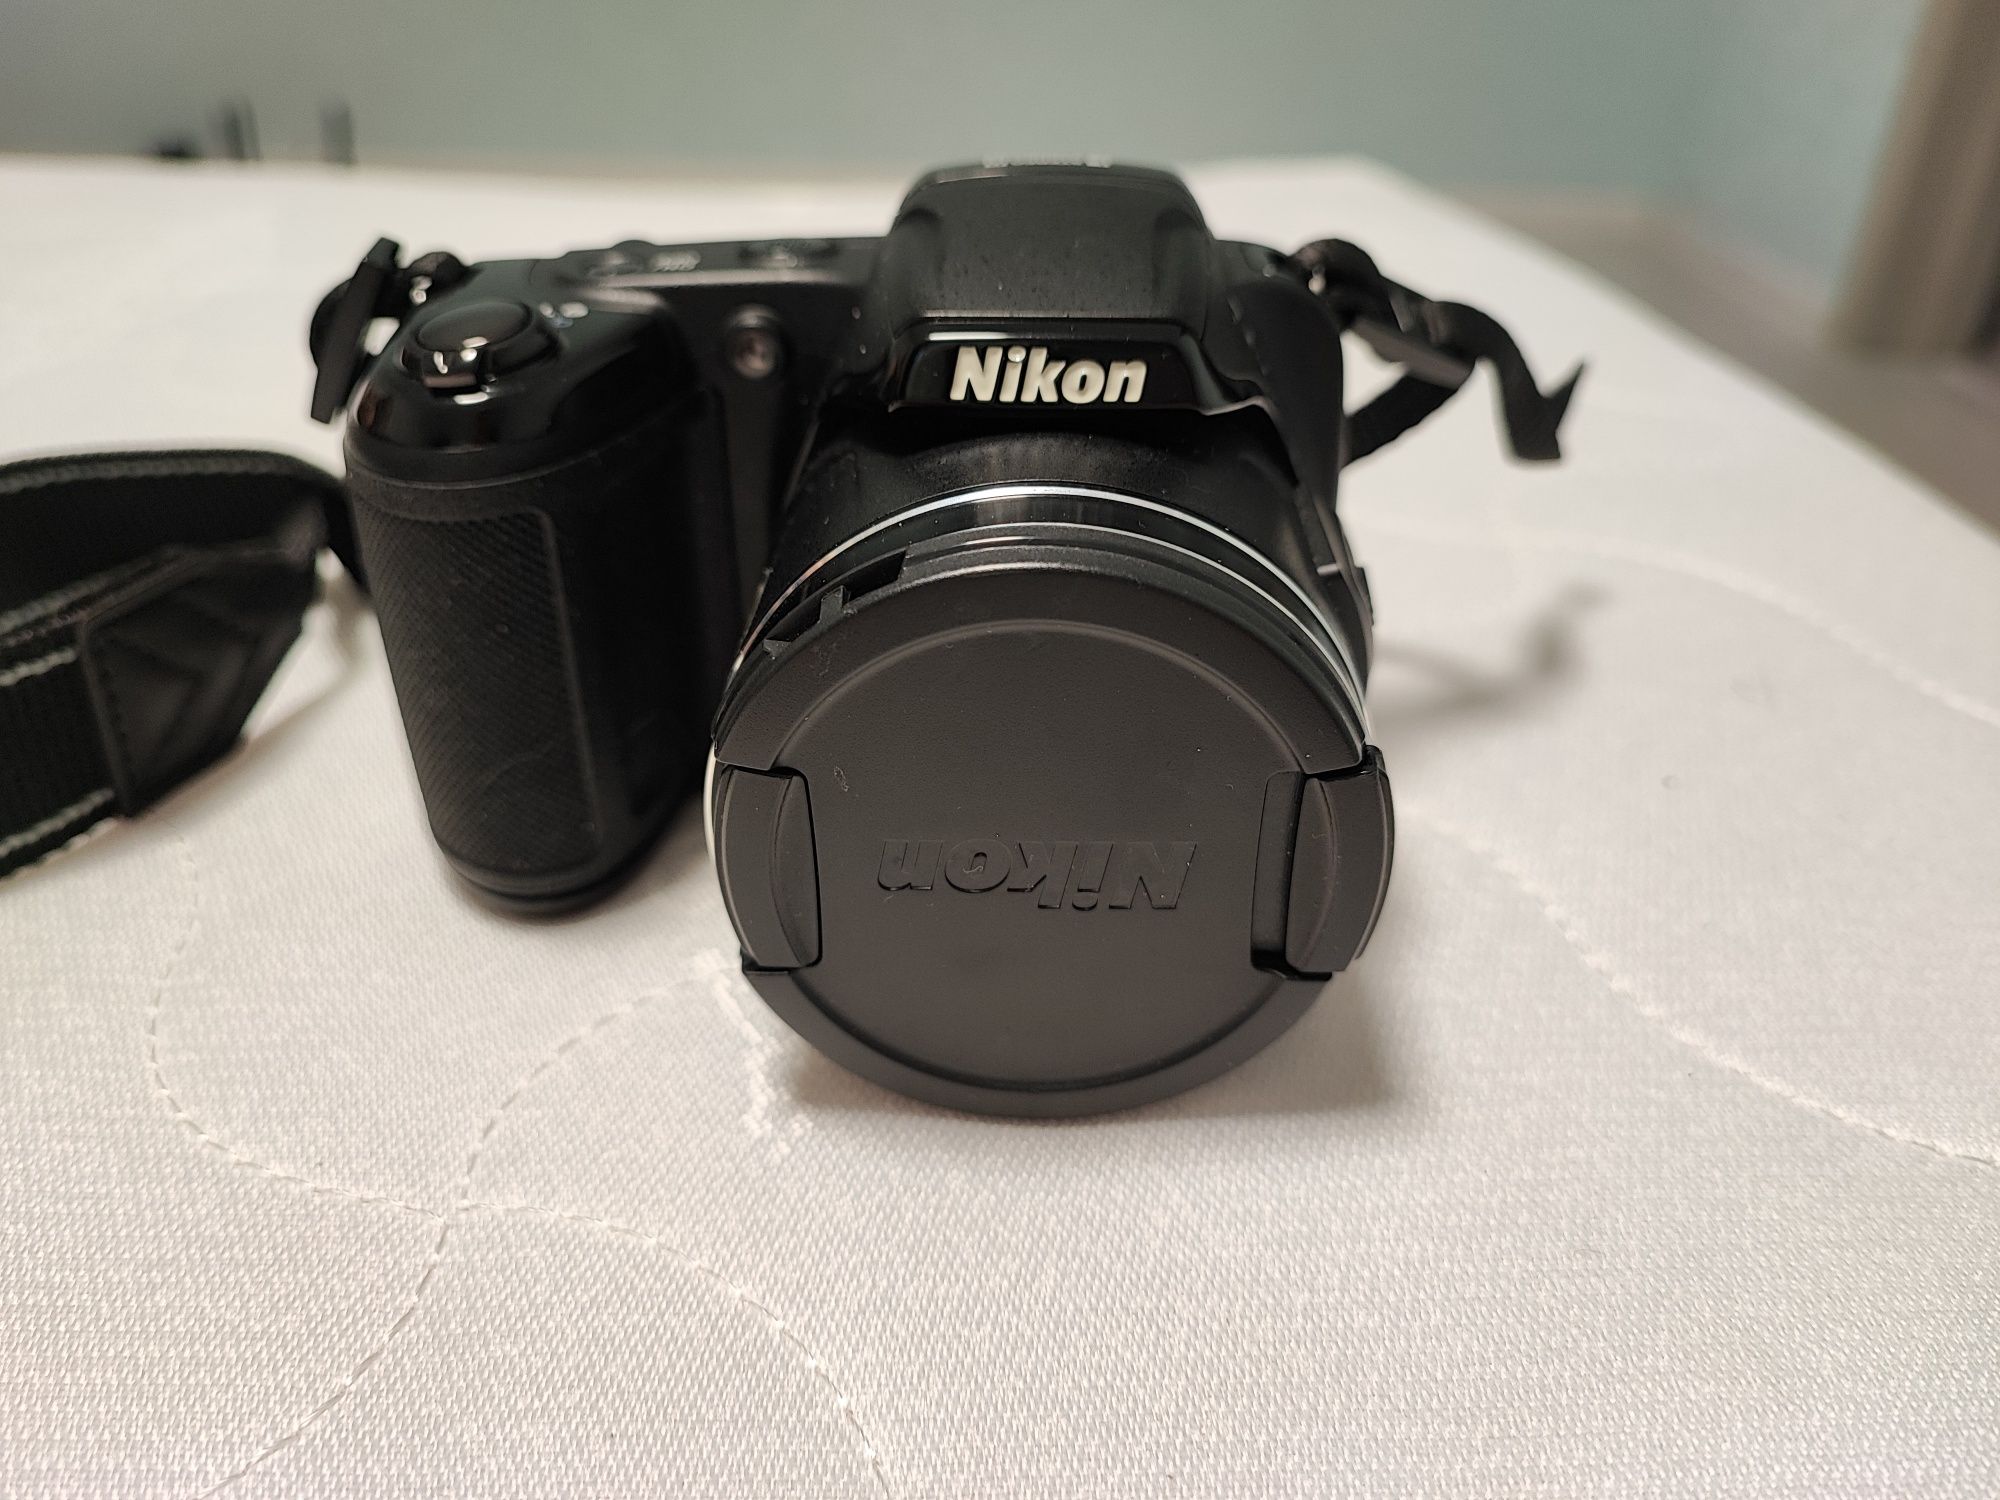 Цифровой фотоаппарат Nikon Coolpix L810. Производитель Япония